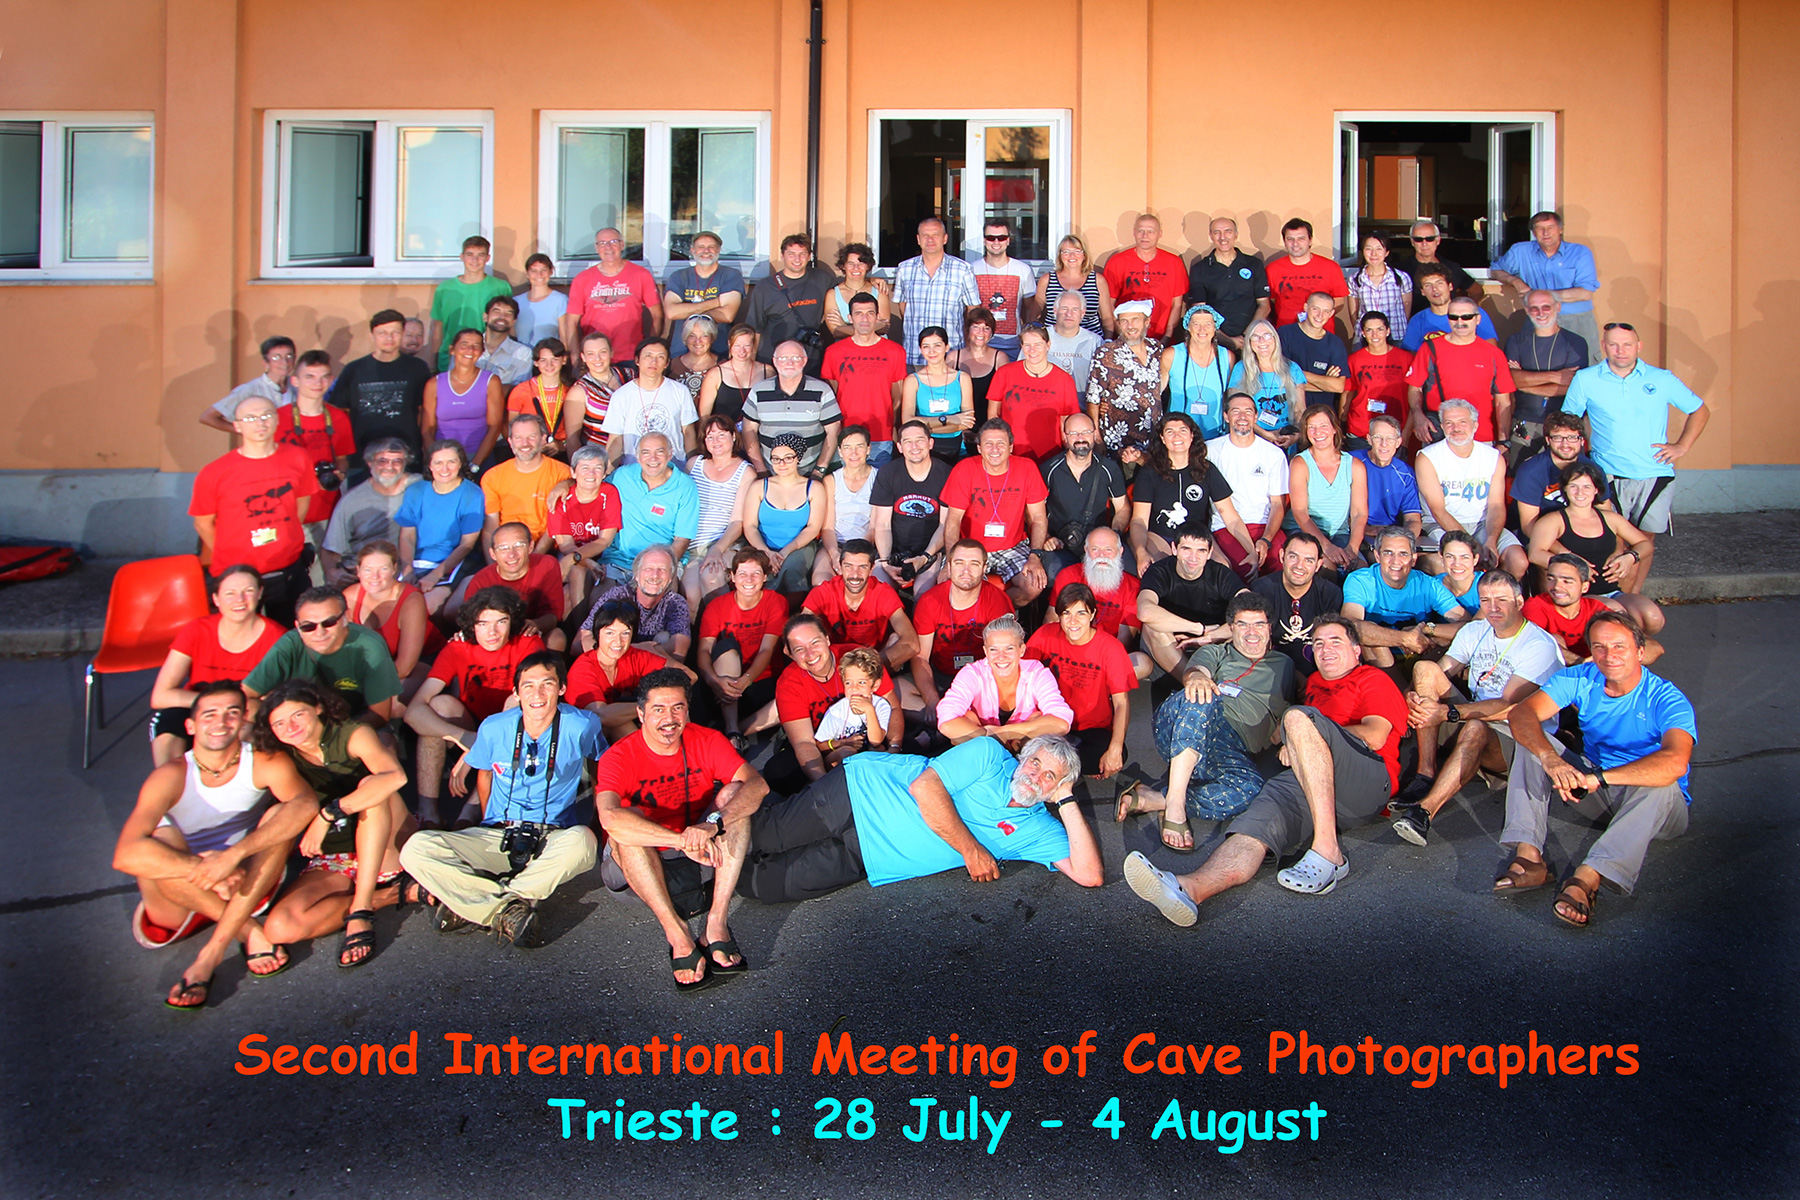 Participants aux deuxièmes Rencontres Internationales des Photographes du Monde Souterrain (28 juillet au 3 août 2013 à Trieste) - Photo réalisée par Antonio Danieli